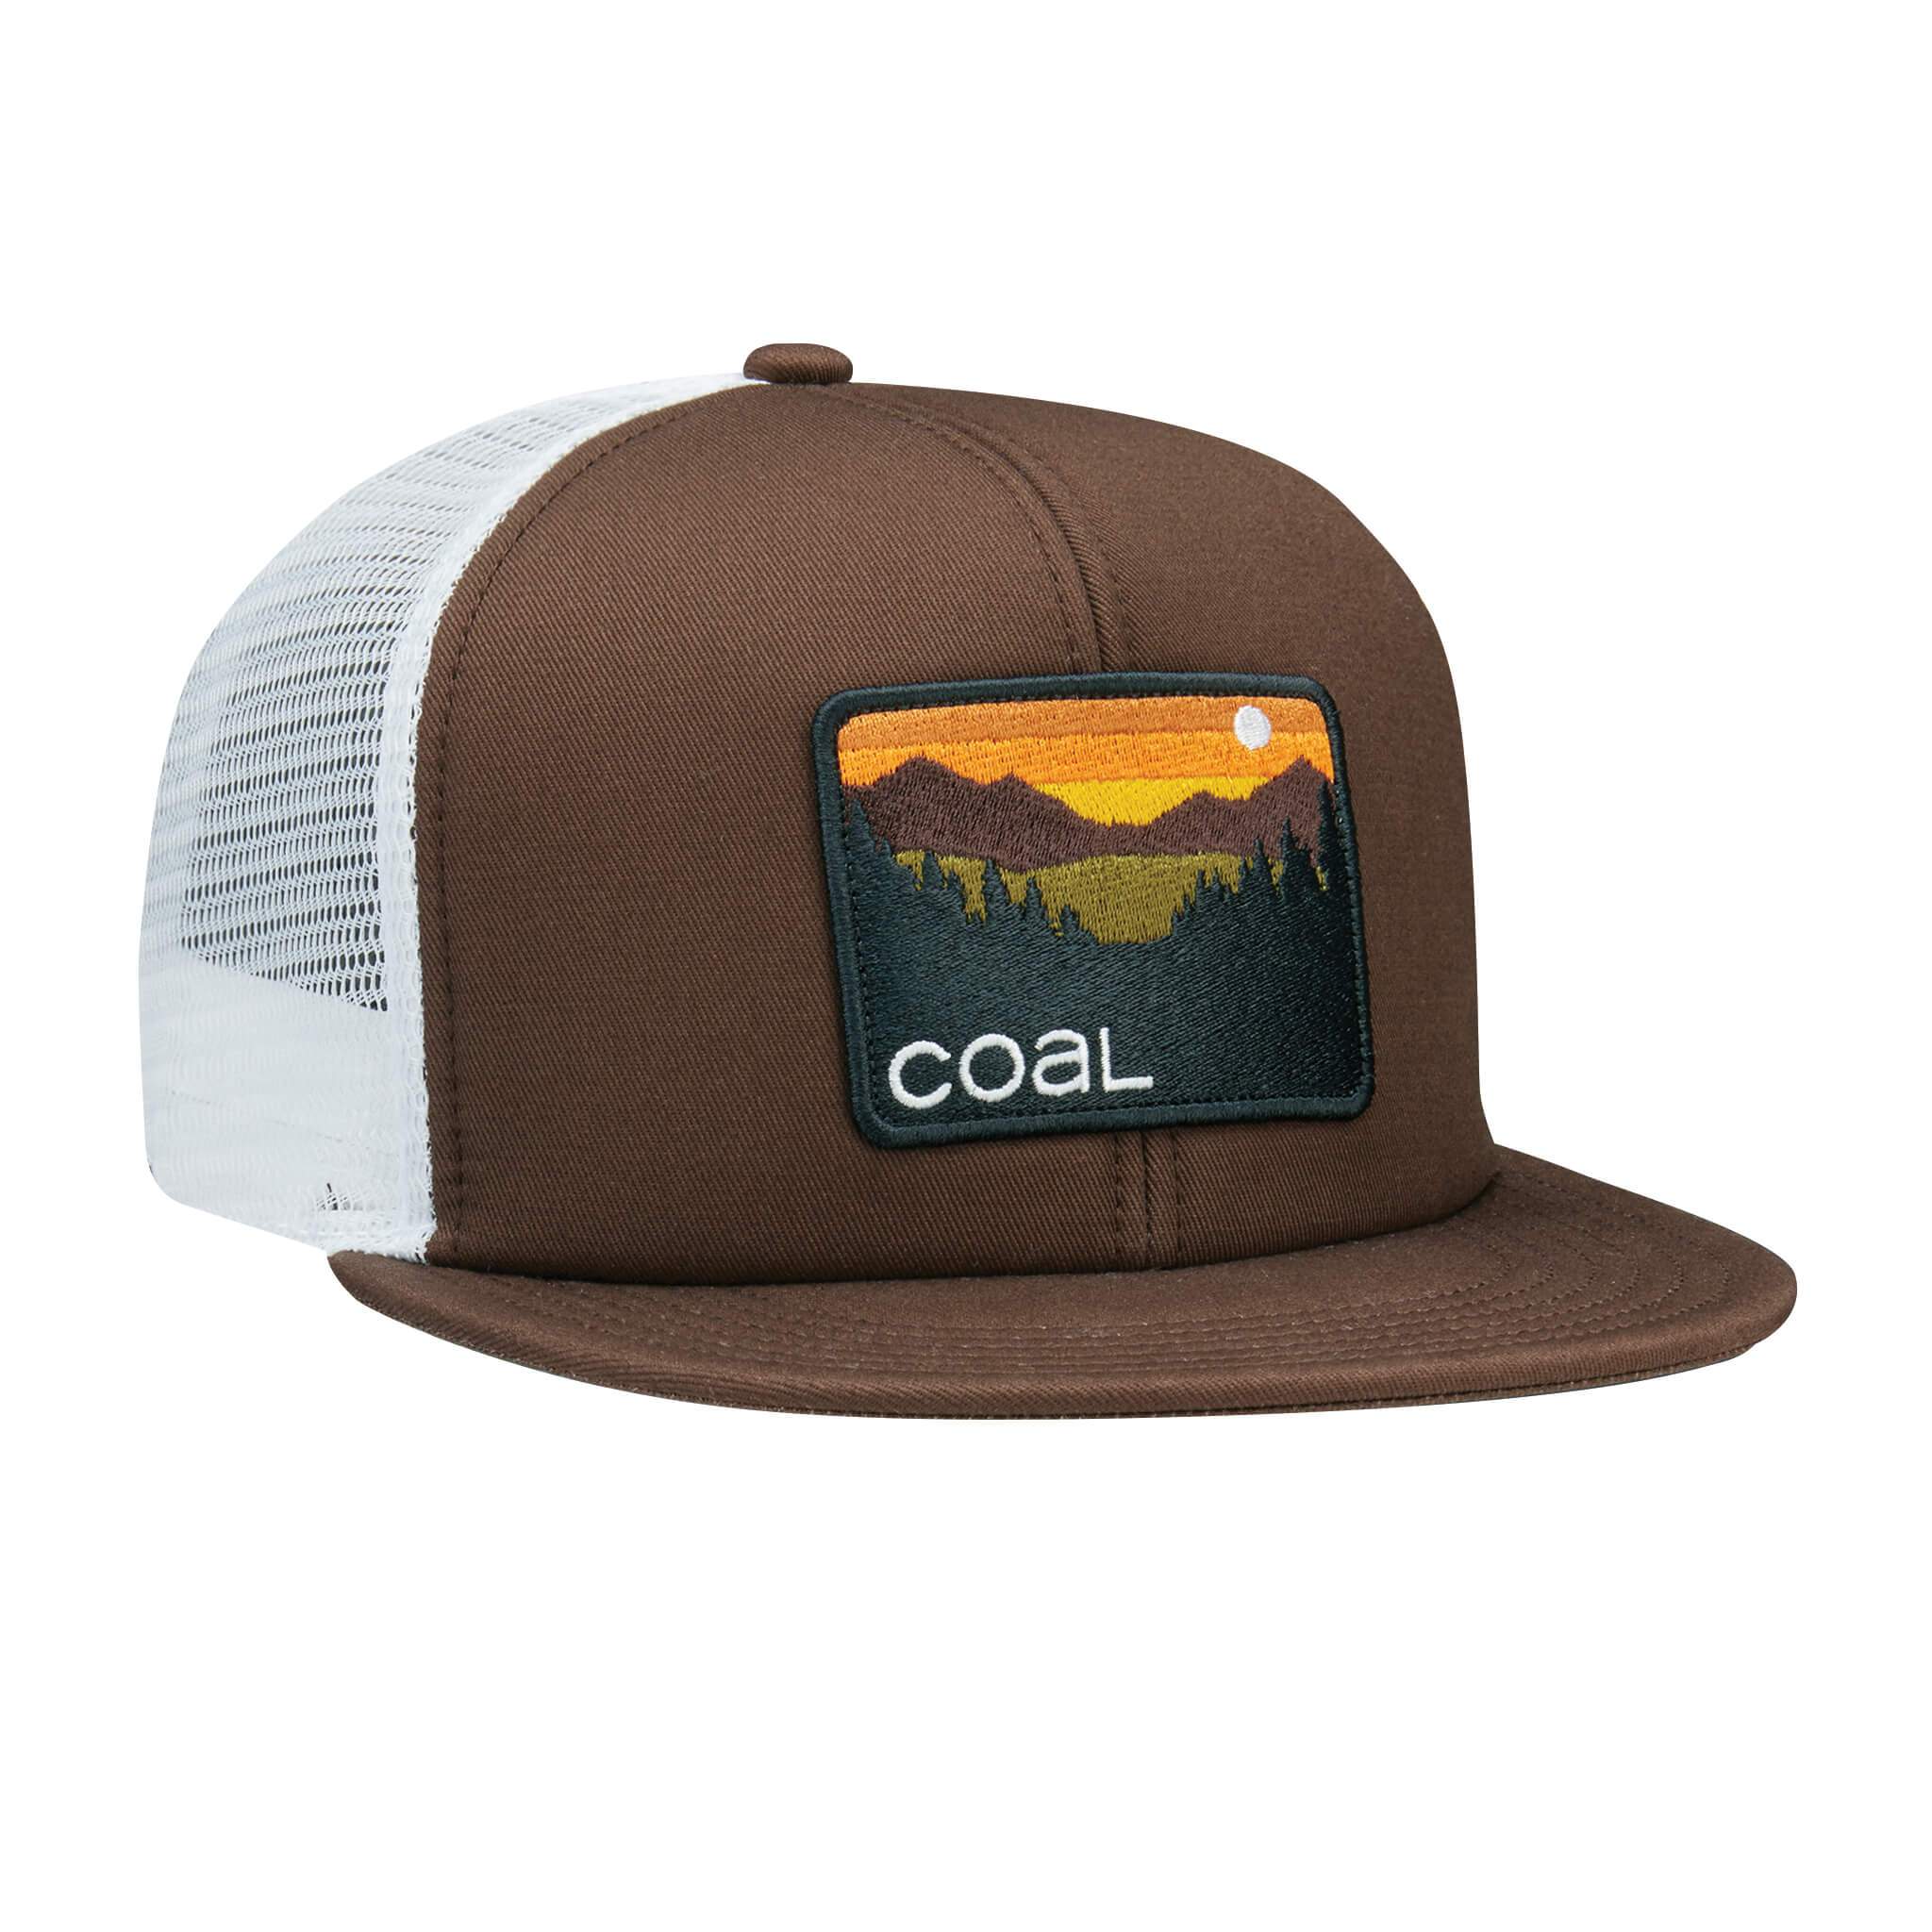 Coal Hauler Trucker Hat - 88 Gear